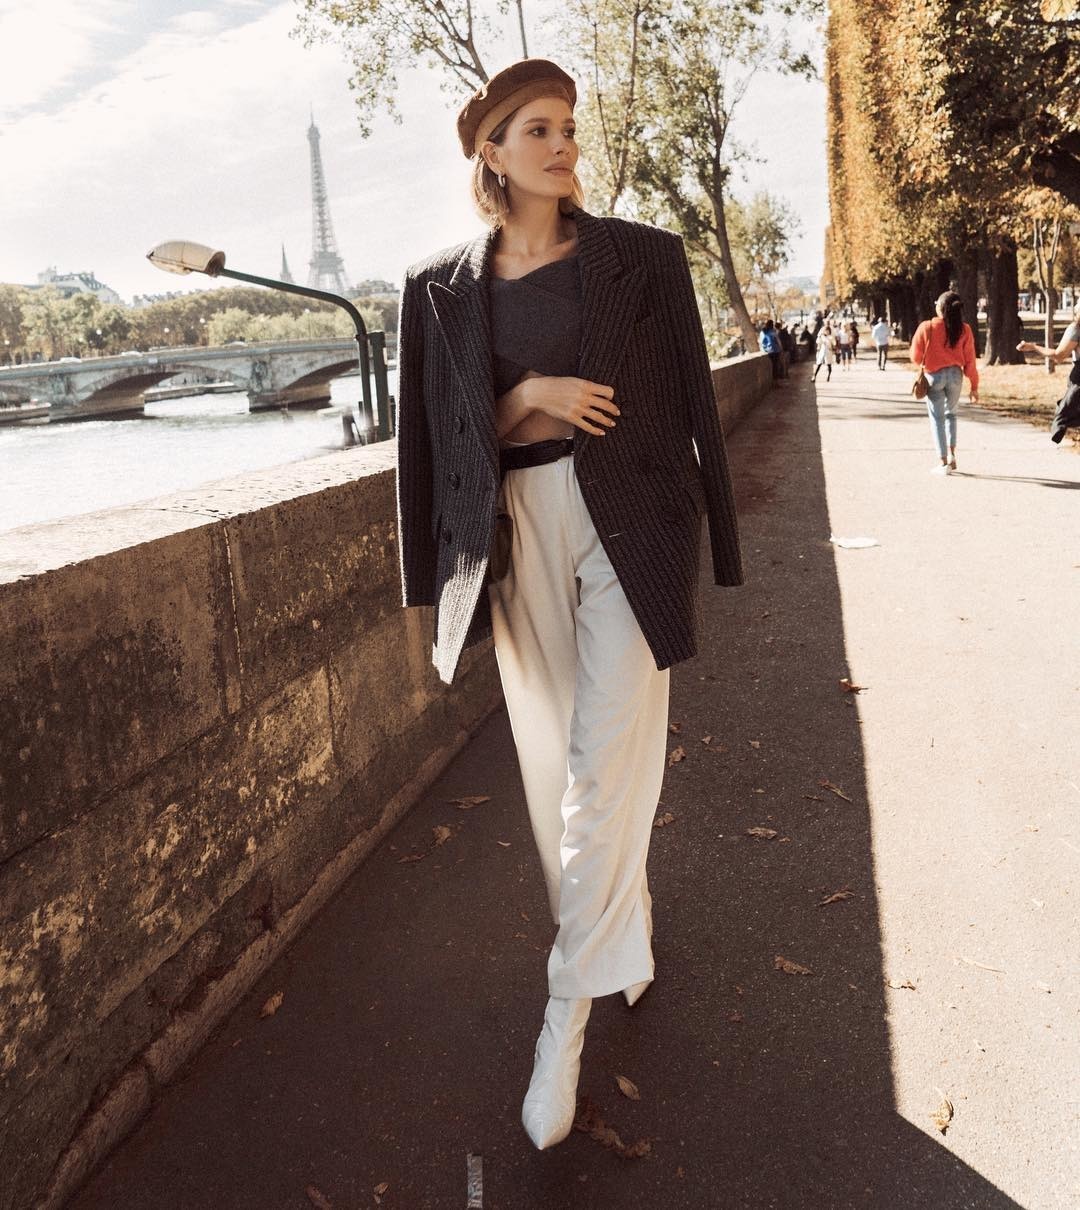 Alex Carl'dan Lena Perminova'ya Haftanın En İyi Moda Instagramları